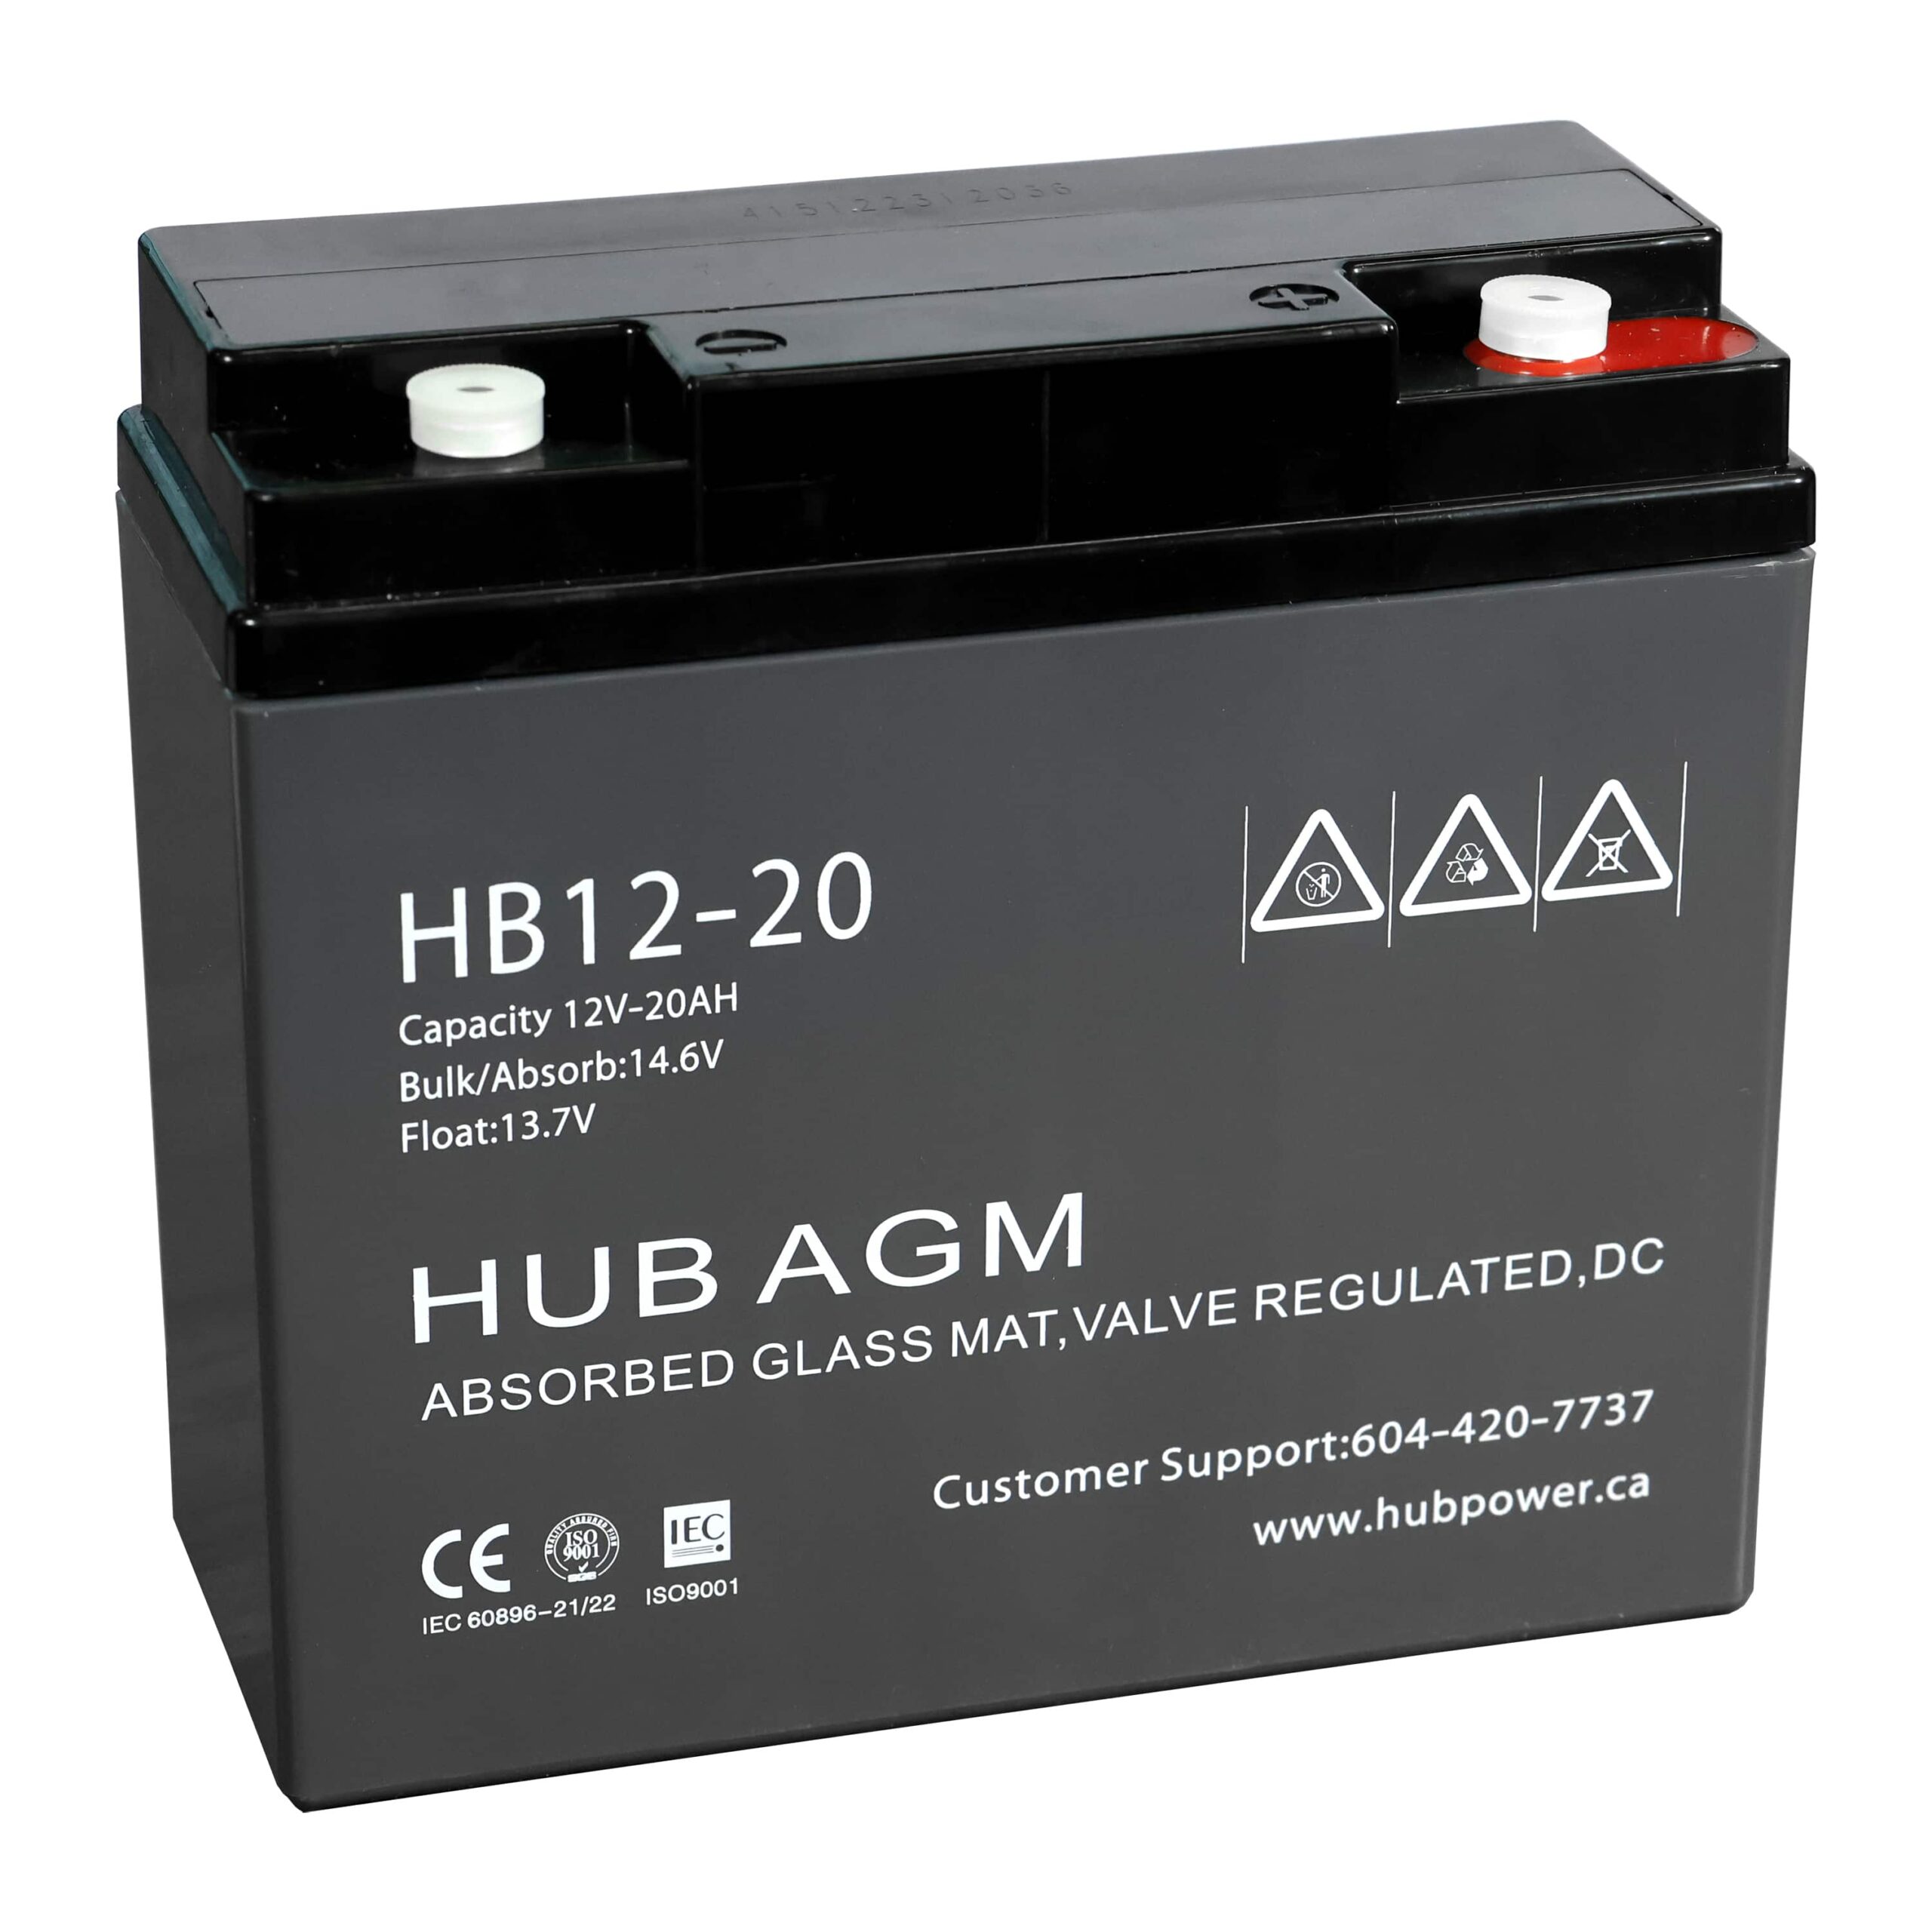 HB12-20